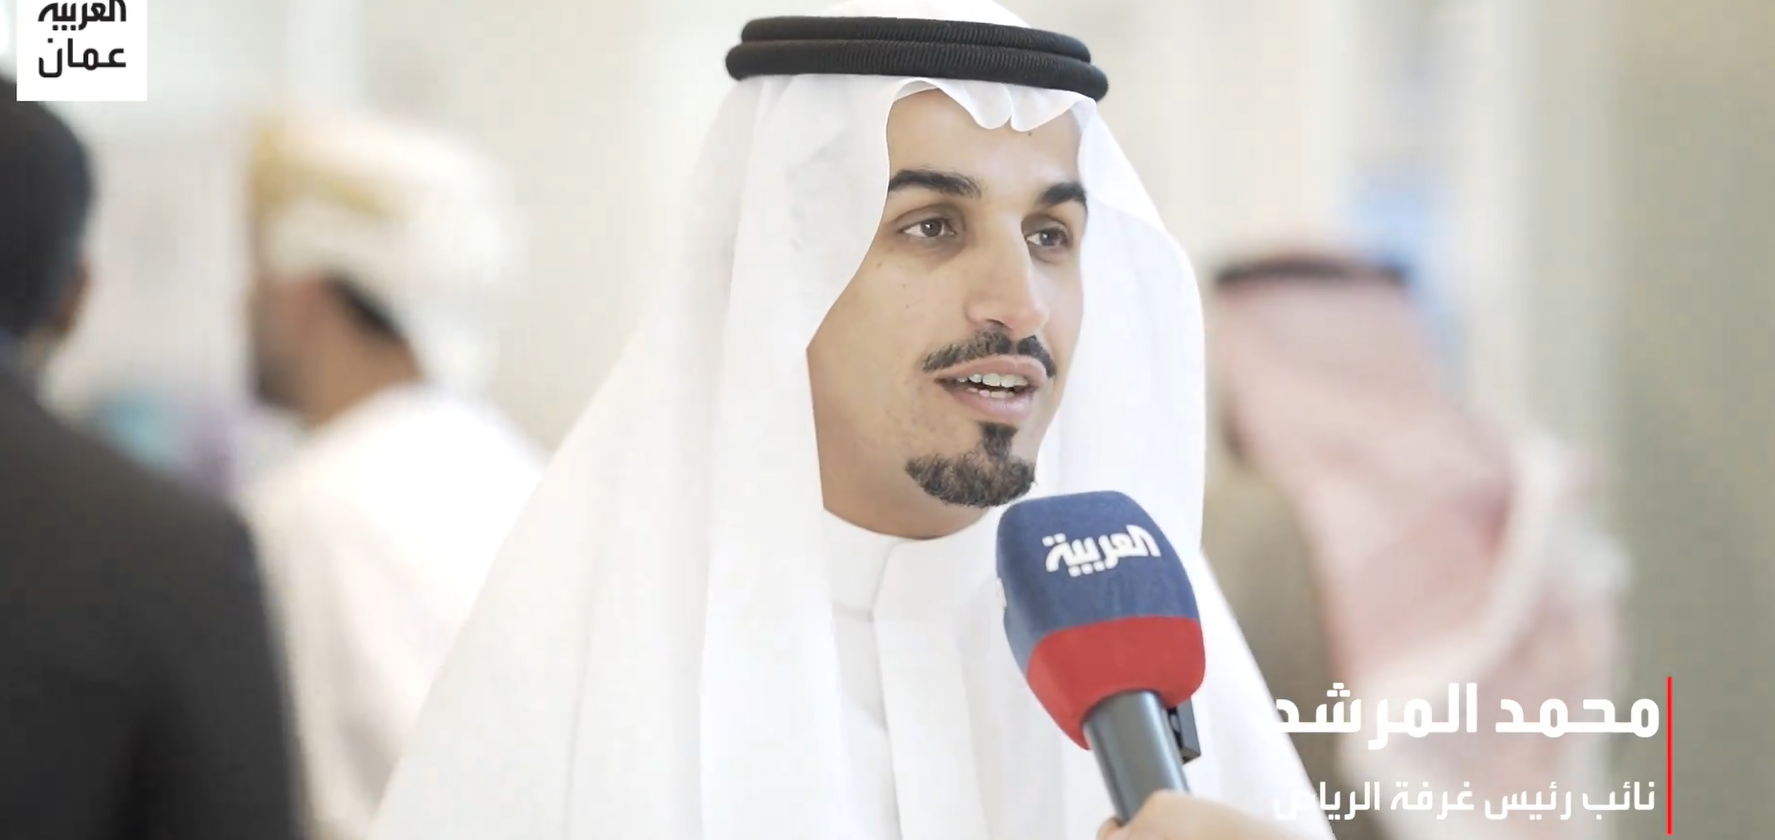 لقاء قناة العربية في منتدى الأعمال العُماني السعودي في #مسقط#السعودية #سلطنة_عمان